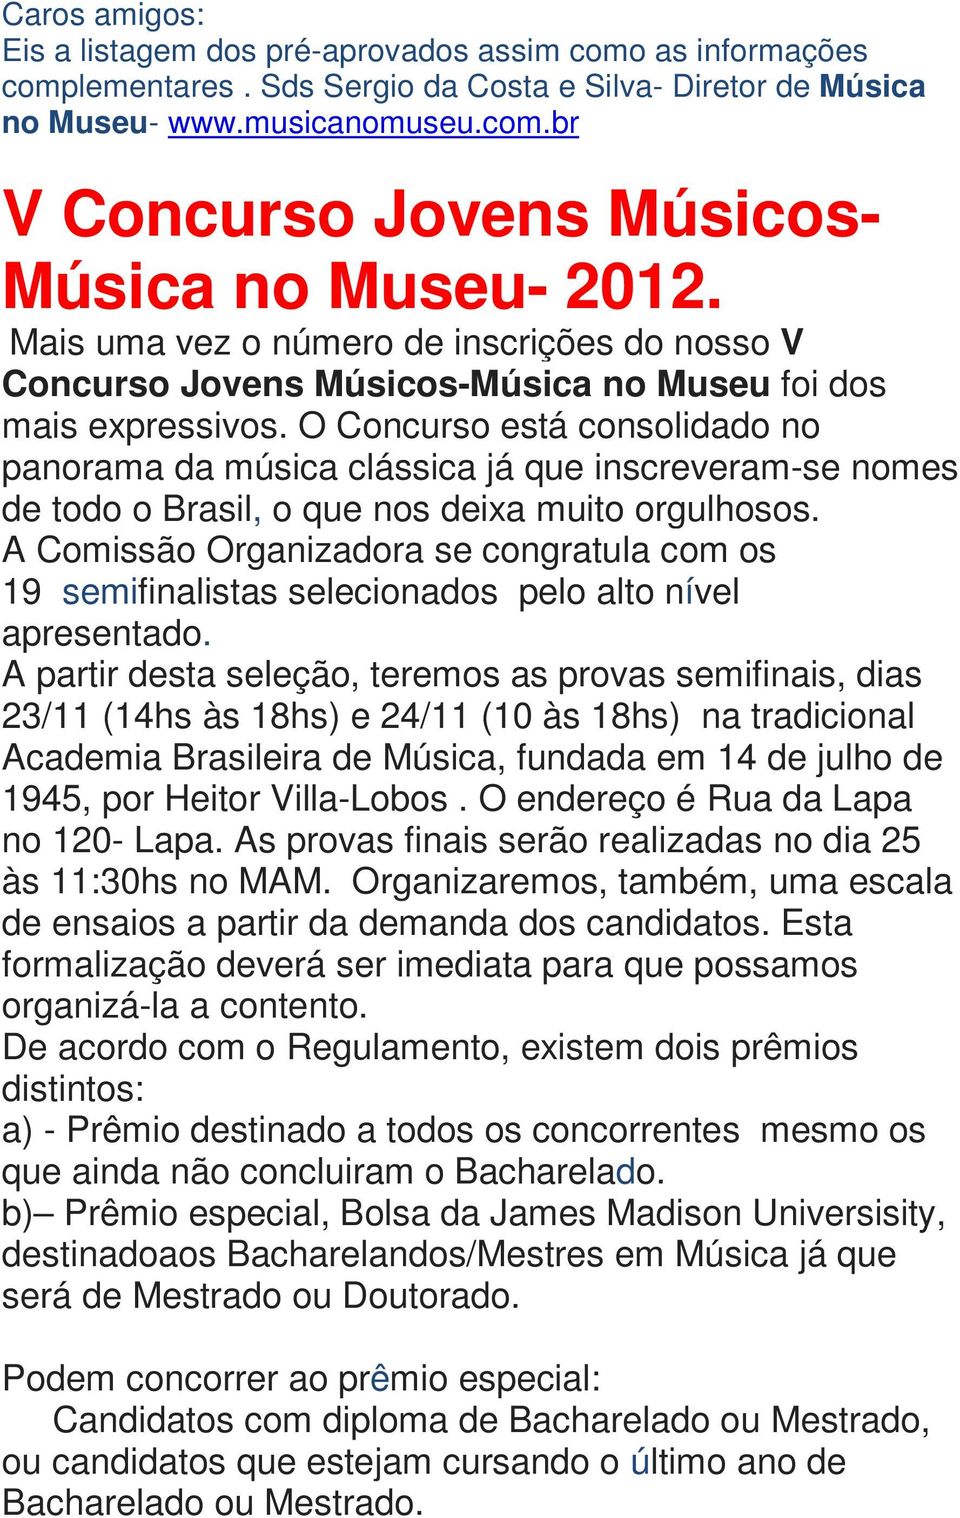 O Concurso está consolidado no panorama da música clássica já que inscreveram-se nomes de todo o Brasil, o que nos deixa muito orgulhosos.